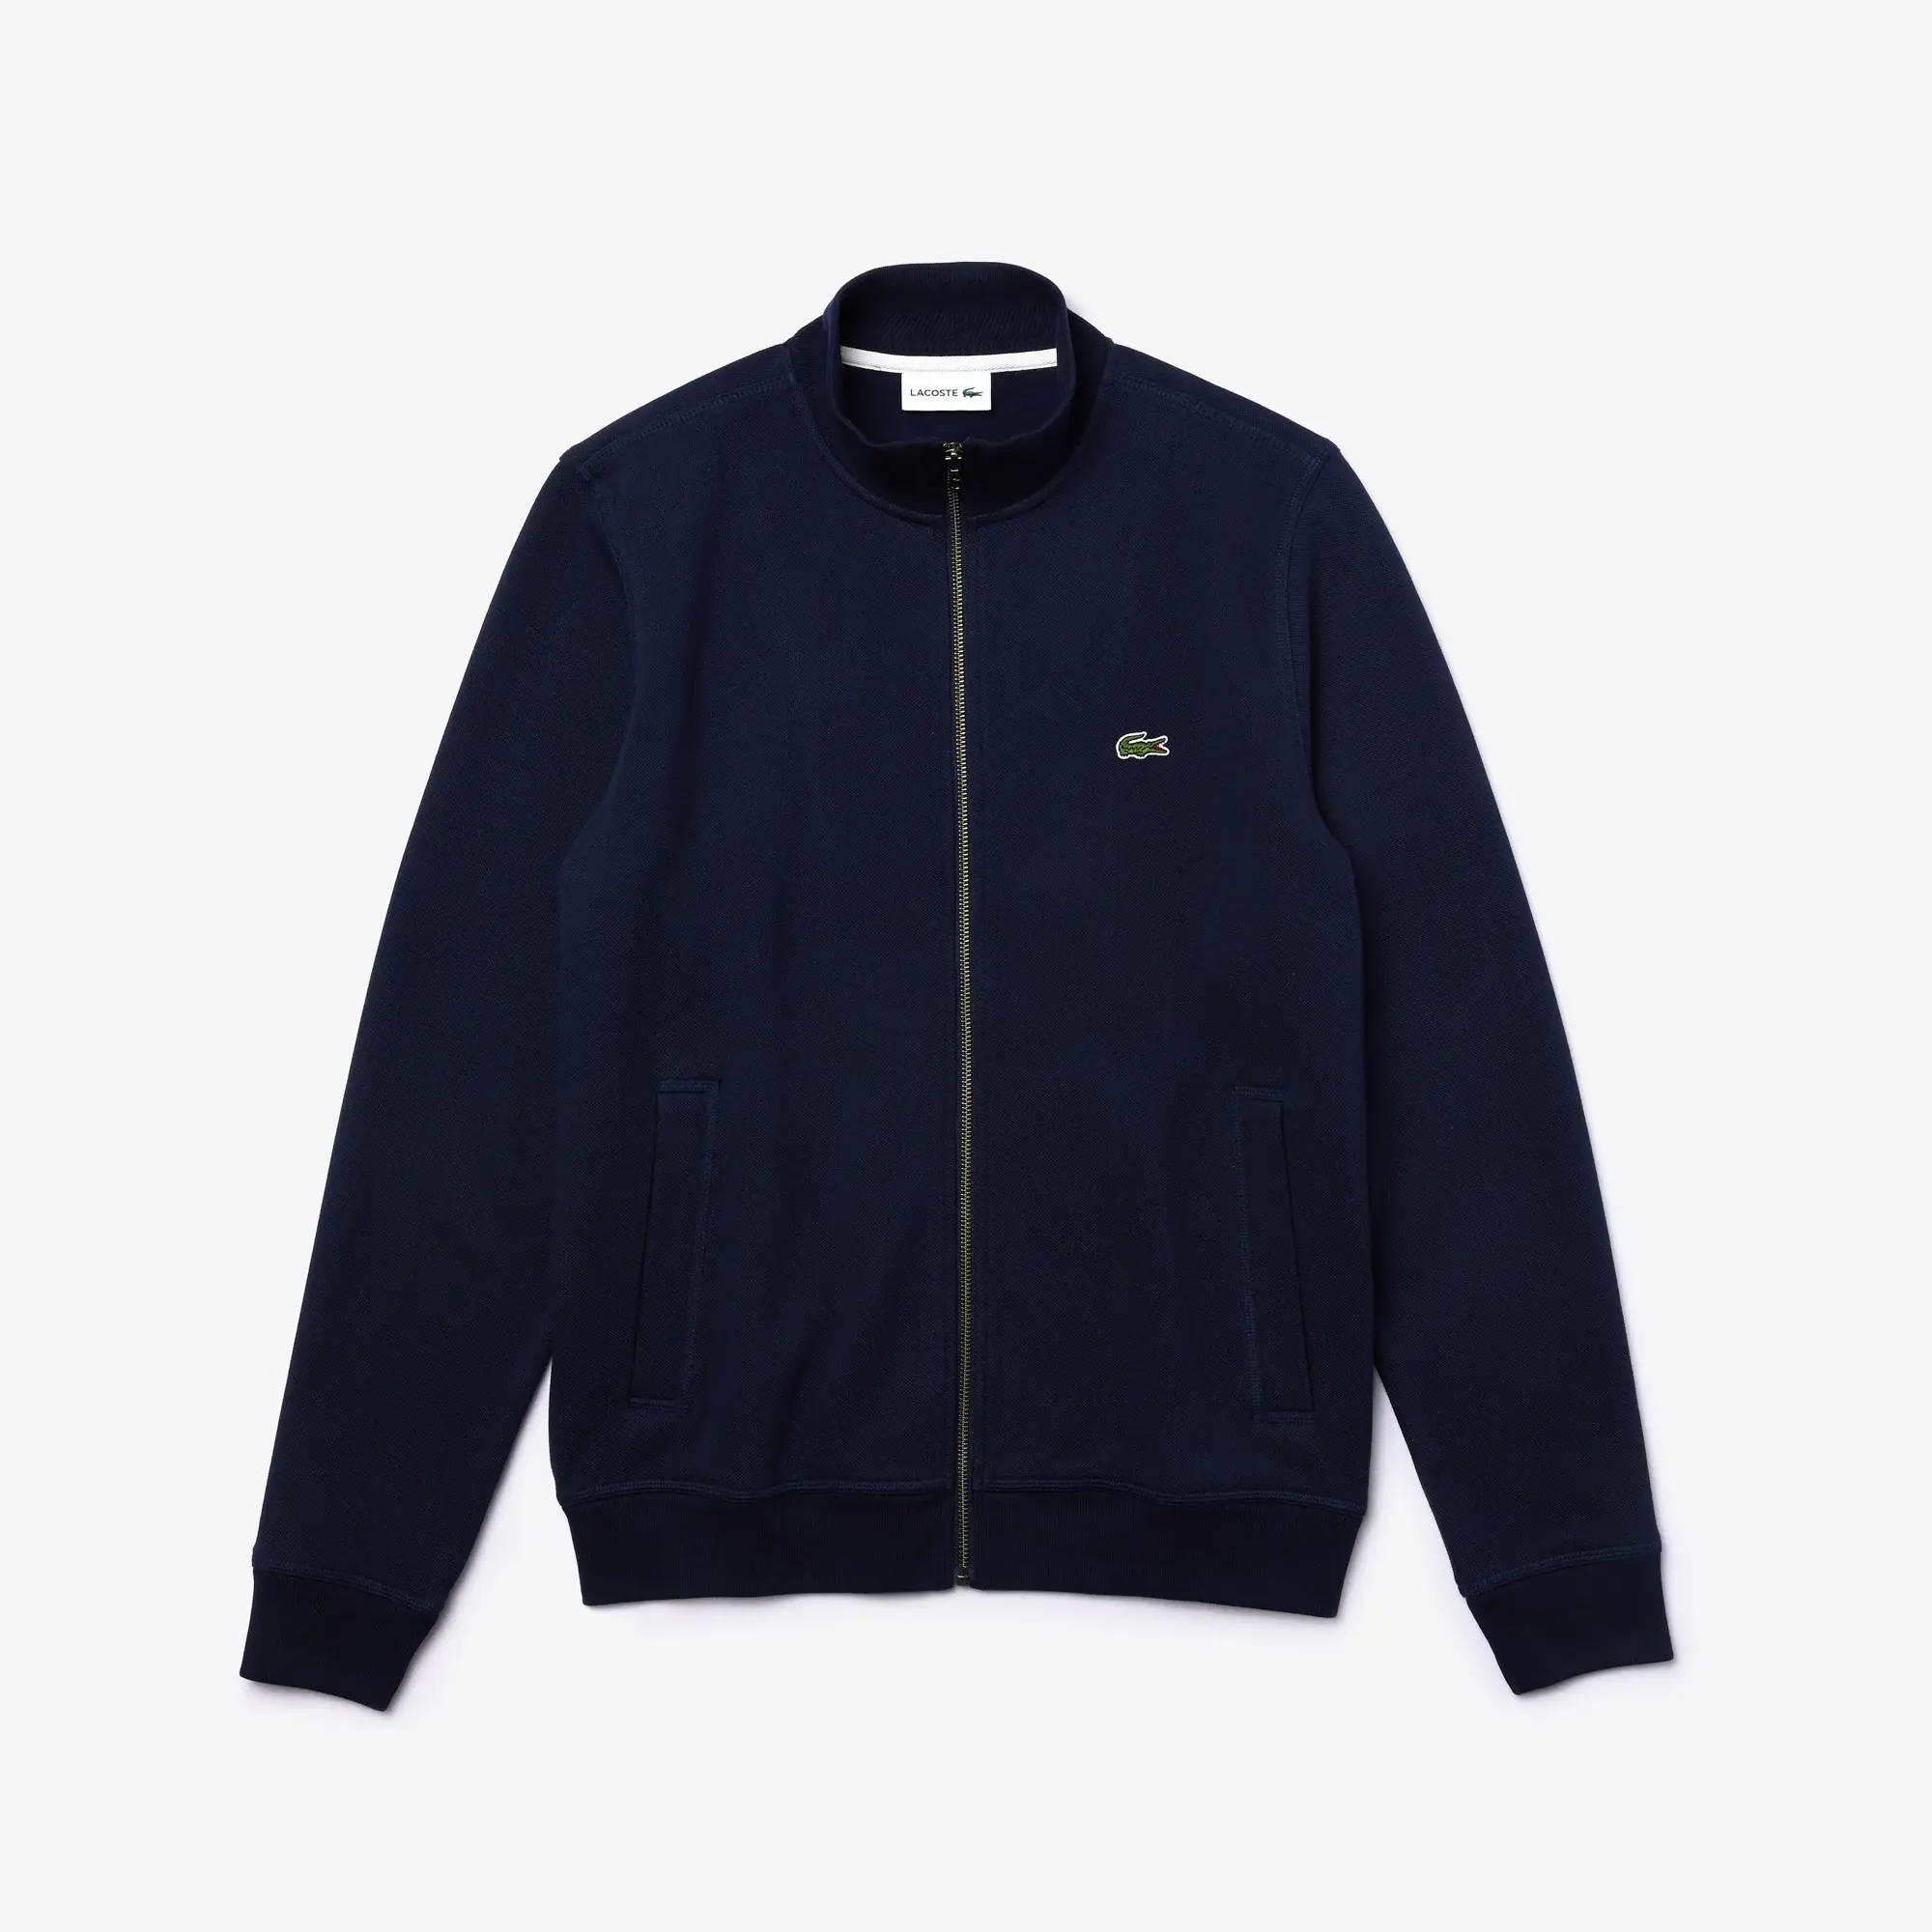 Lacoste Men's Zip-Up Piqué Fleece Jacket. 2